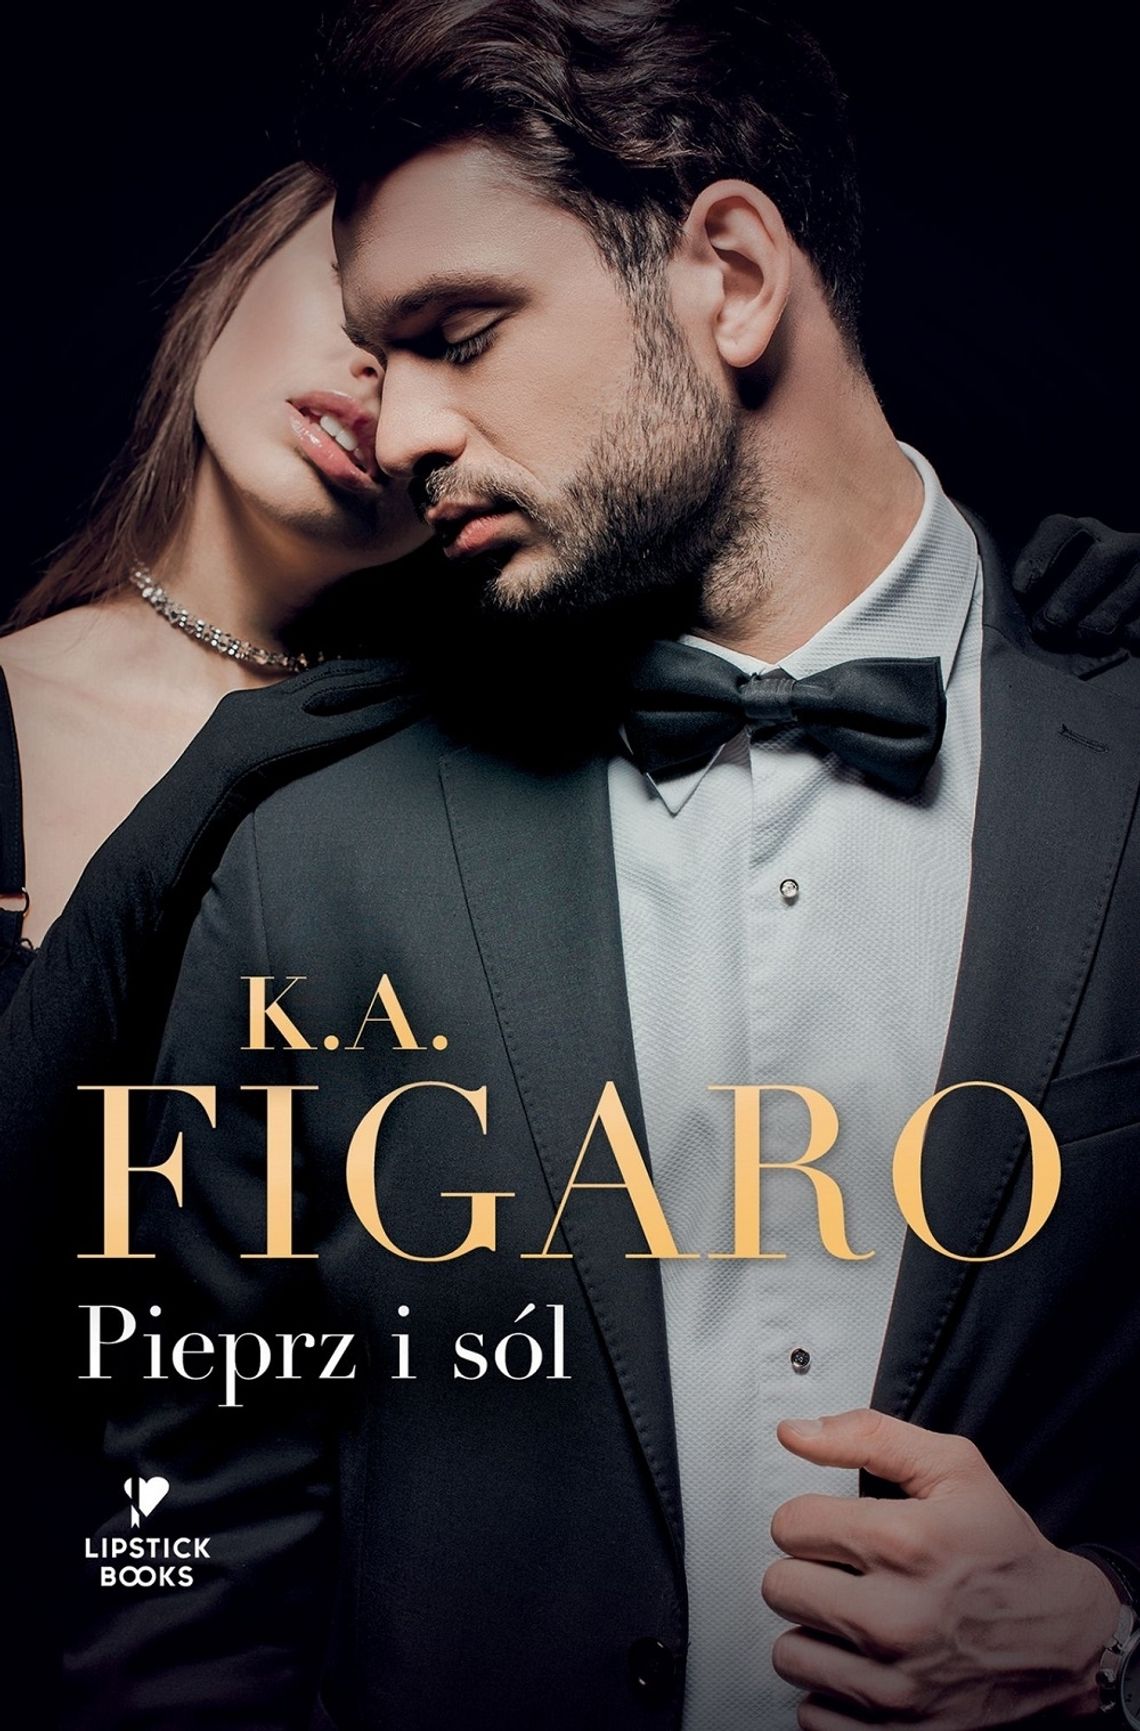 K. A. Figaro "PIEPRZ I SÓL"; wyd. Foksal